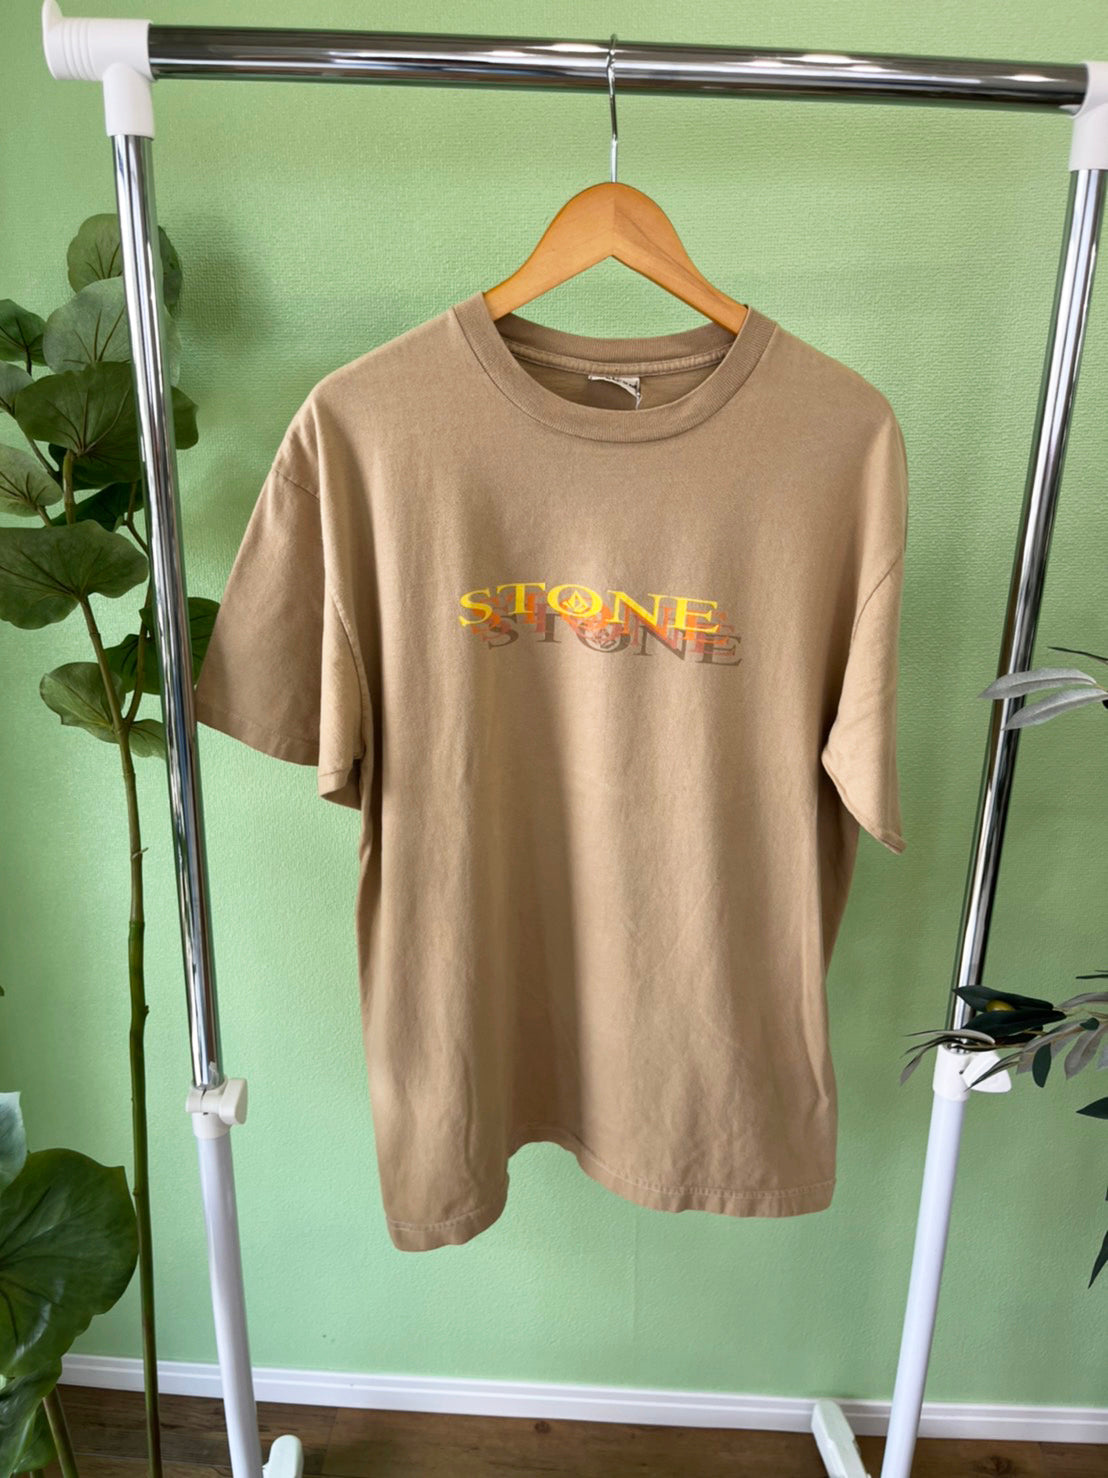 【VOLCOM】90's vintage VOLCOM rare t-shirt made in USA (men's XL)